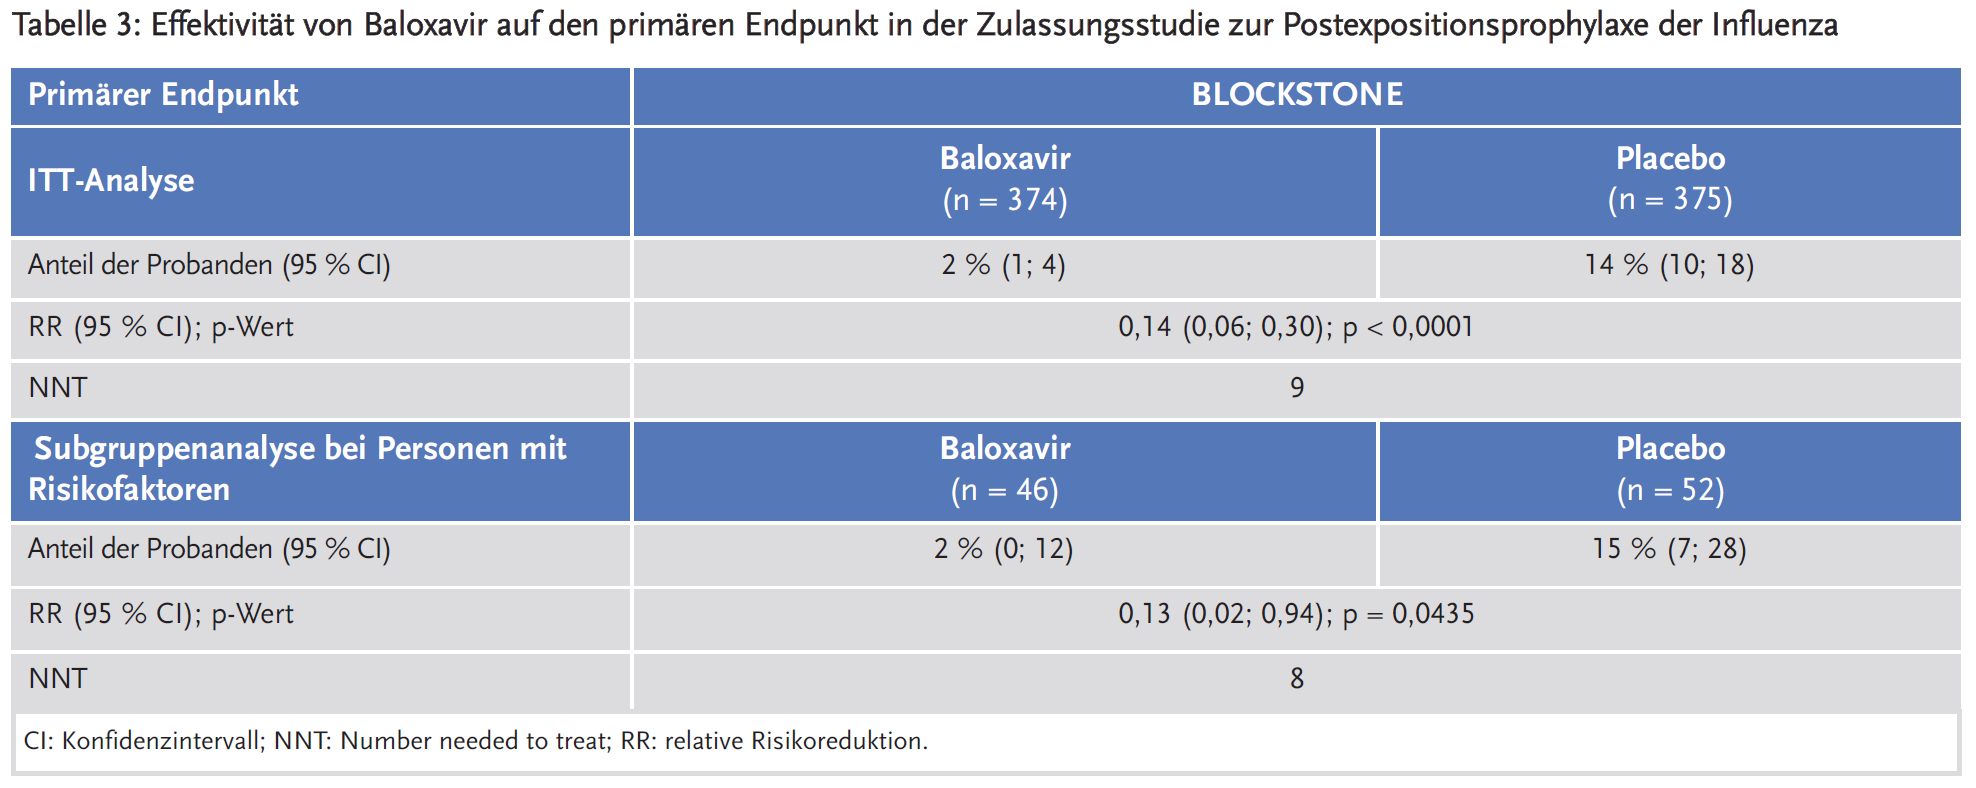 Tabelle 3: Effektivität von Baloxavir auf den primären Endpunkt in der Zulassungsstudie zur Postexpositionsprophylaxe der Influenza